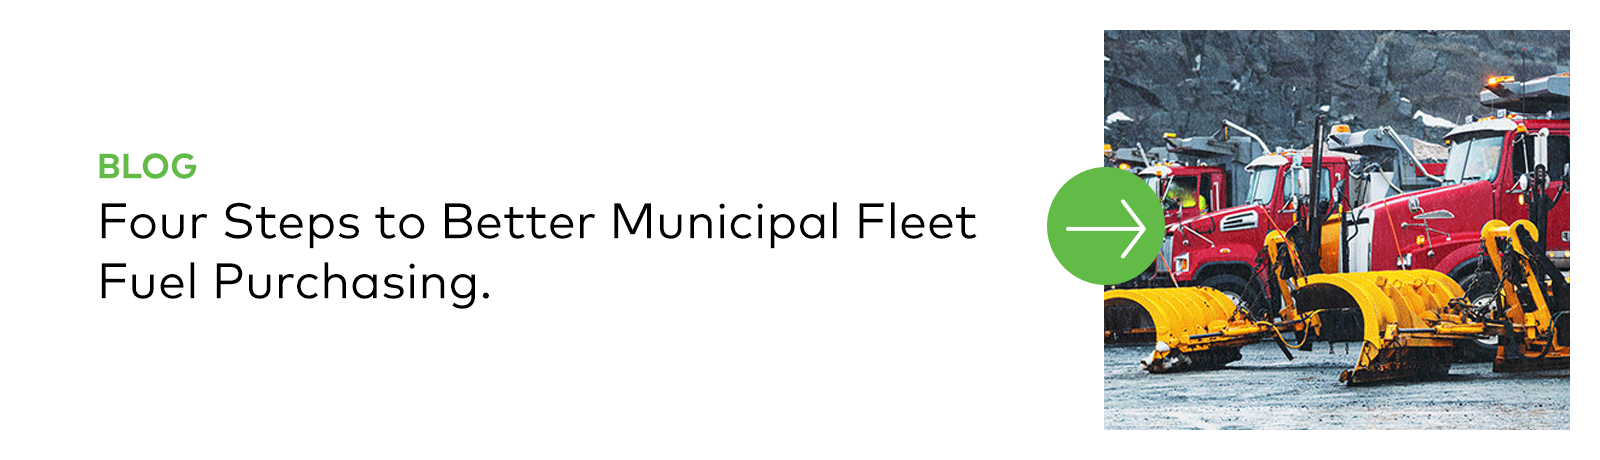 Blog | Four Steps to Better Municipal Fleet Fuel Purchasing